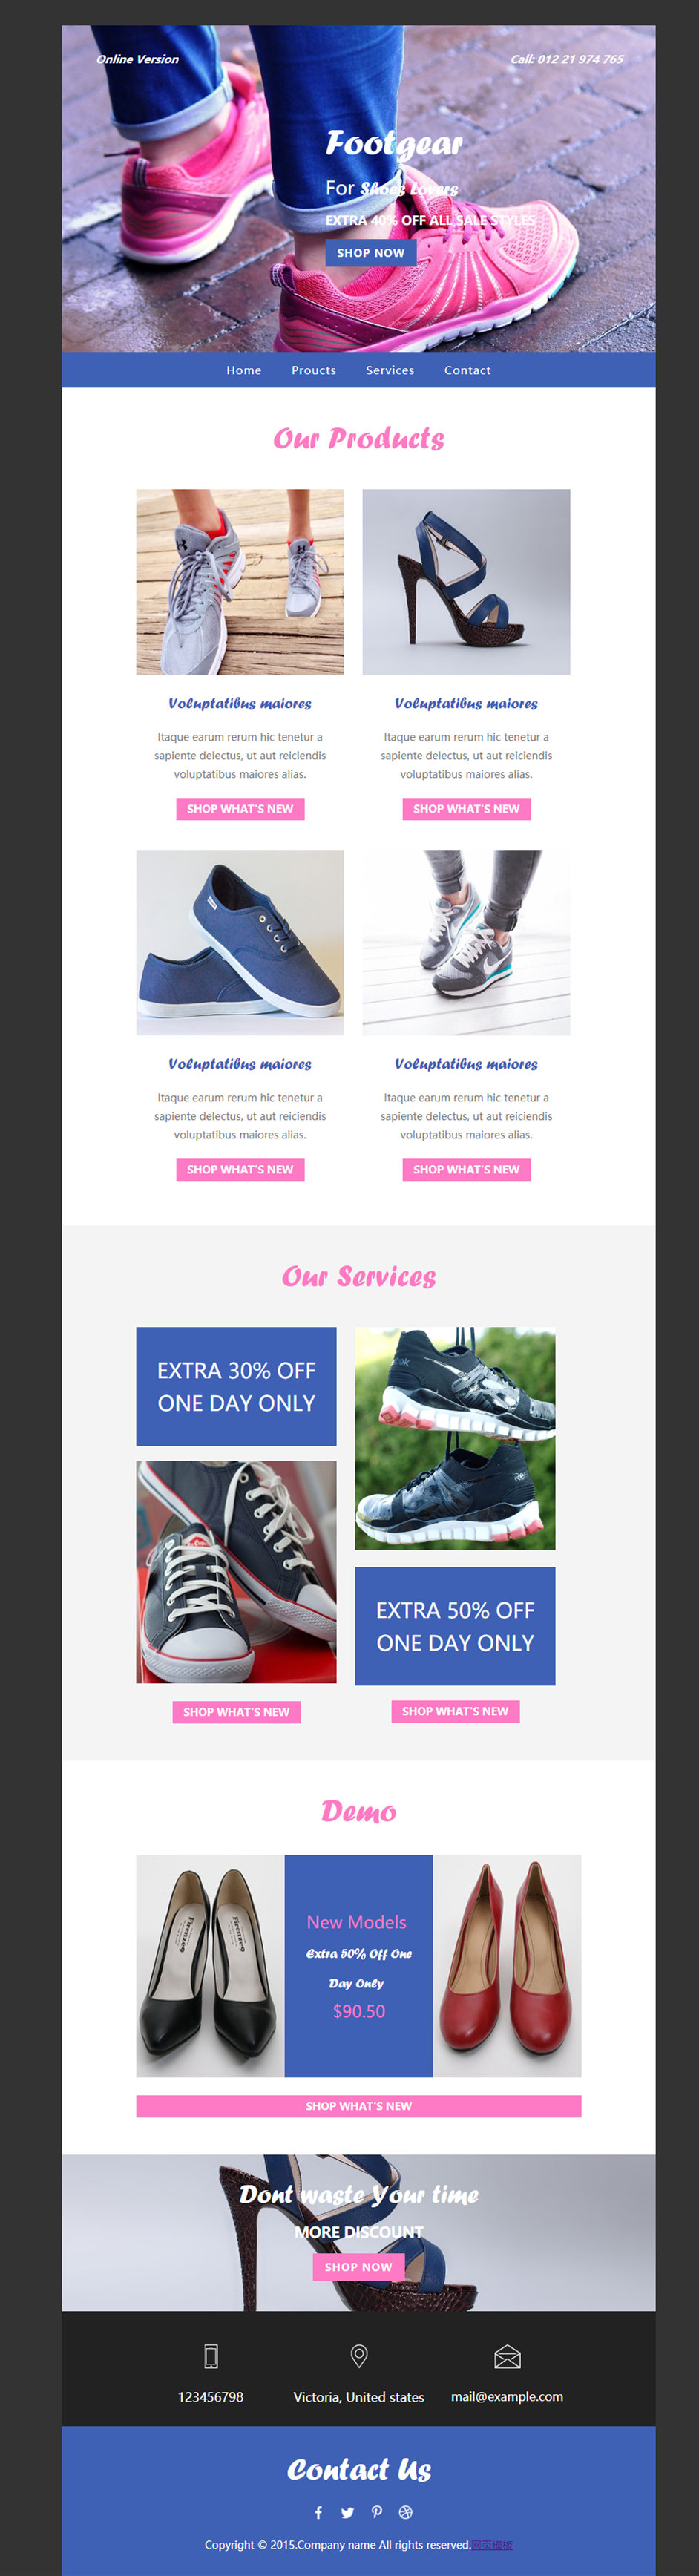 简洁精美的外贸鞋子微商网站模板下载